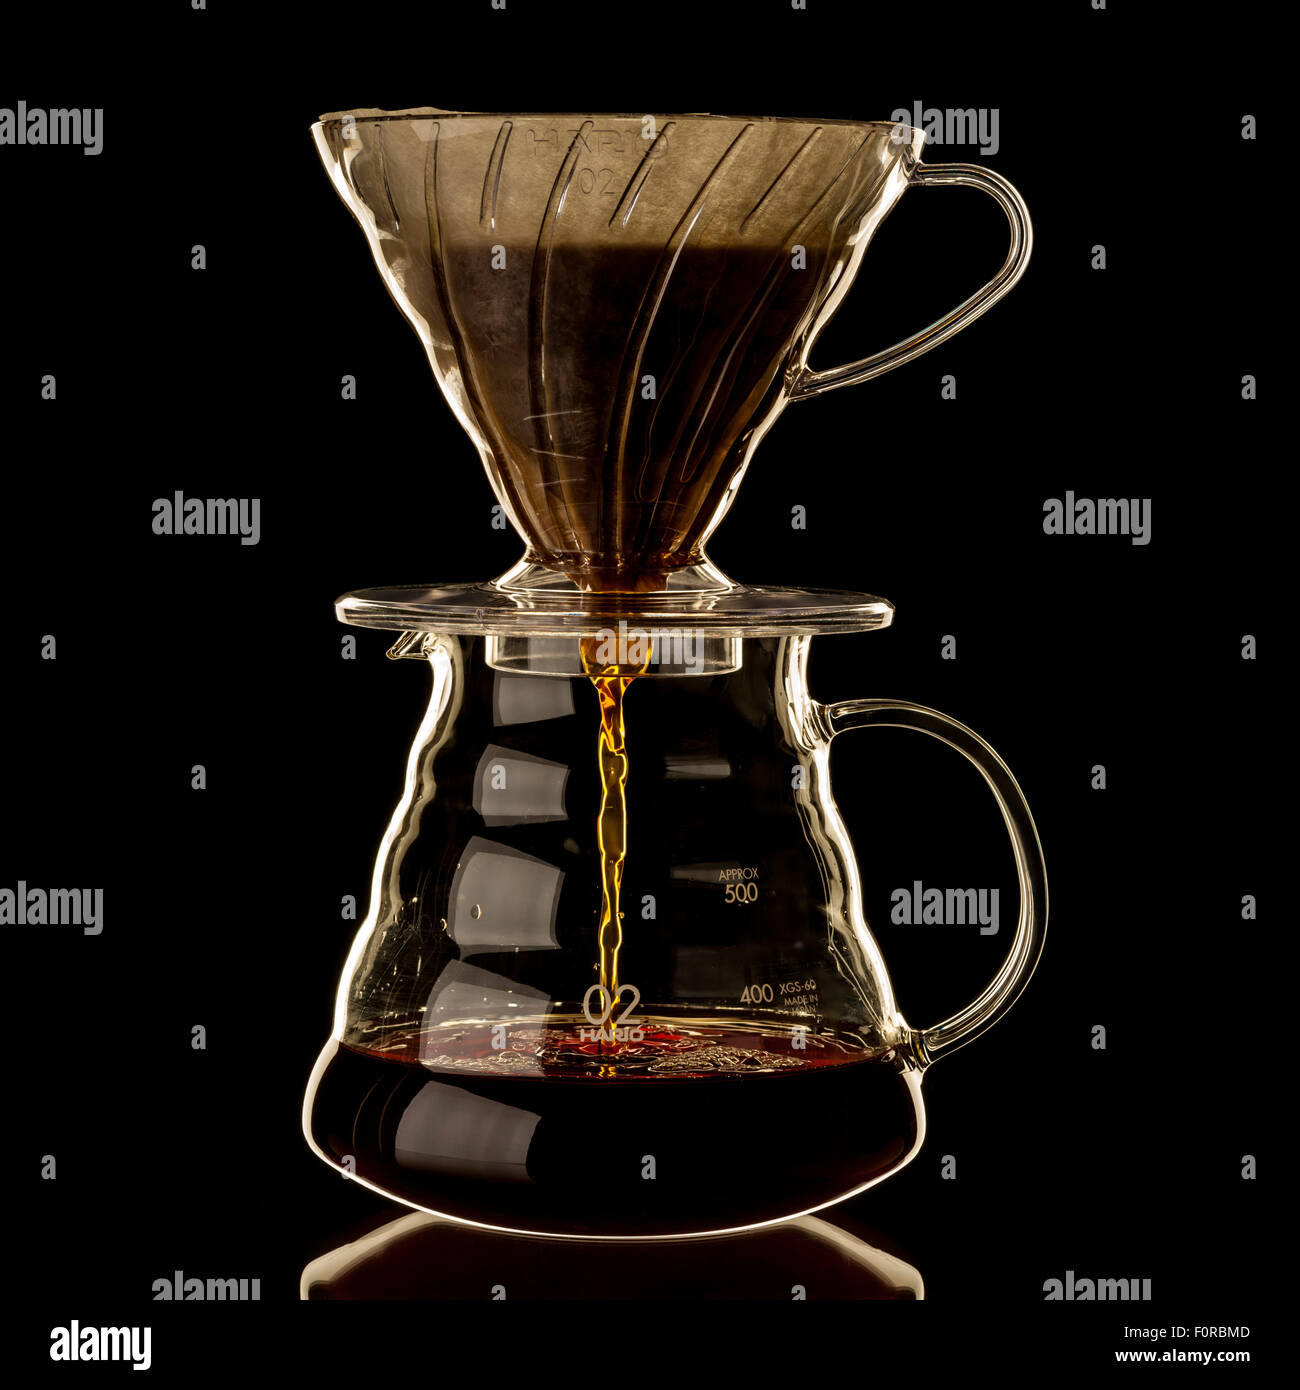 Filtrare il caffè attraverso la linea conica con carta da filtro in una caraffa di vetro Foto Stock